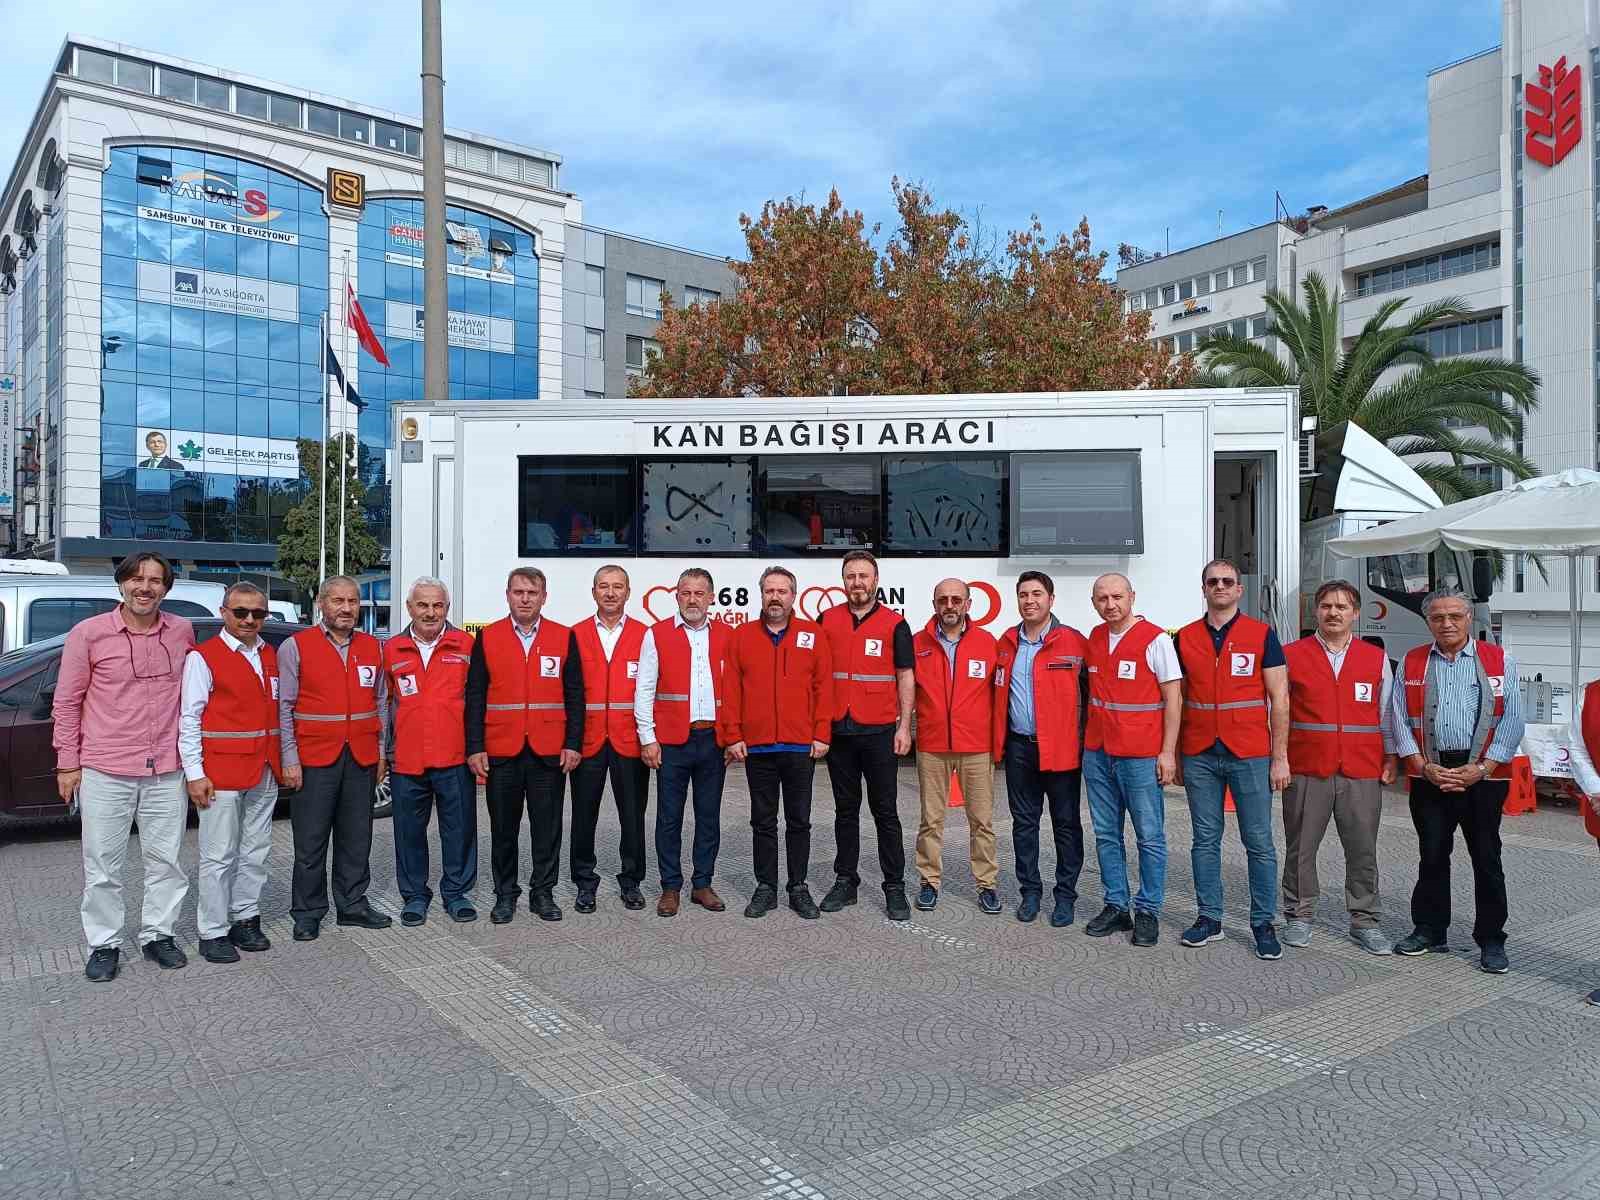 Türk Kızılay Samsun Şubesi’nden bayrak yürüyüşü
